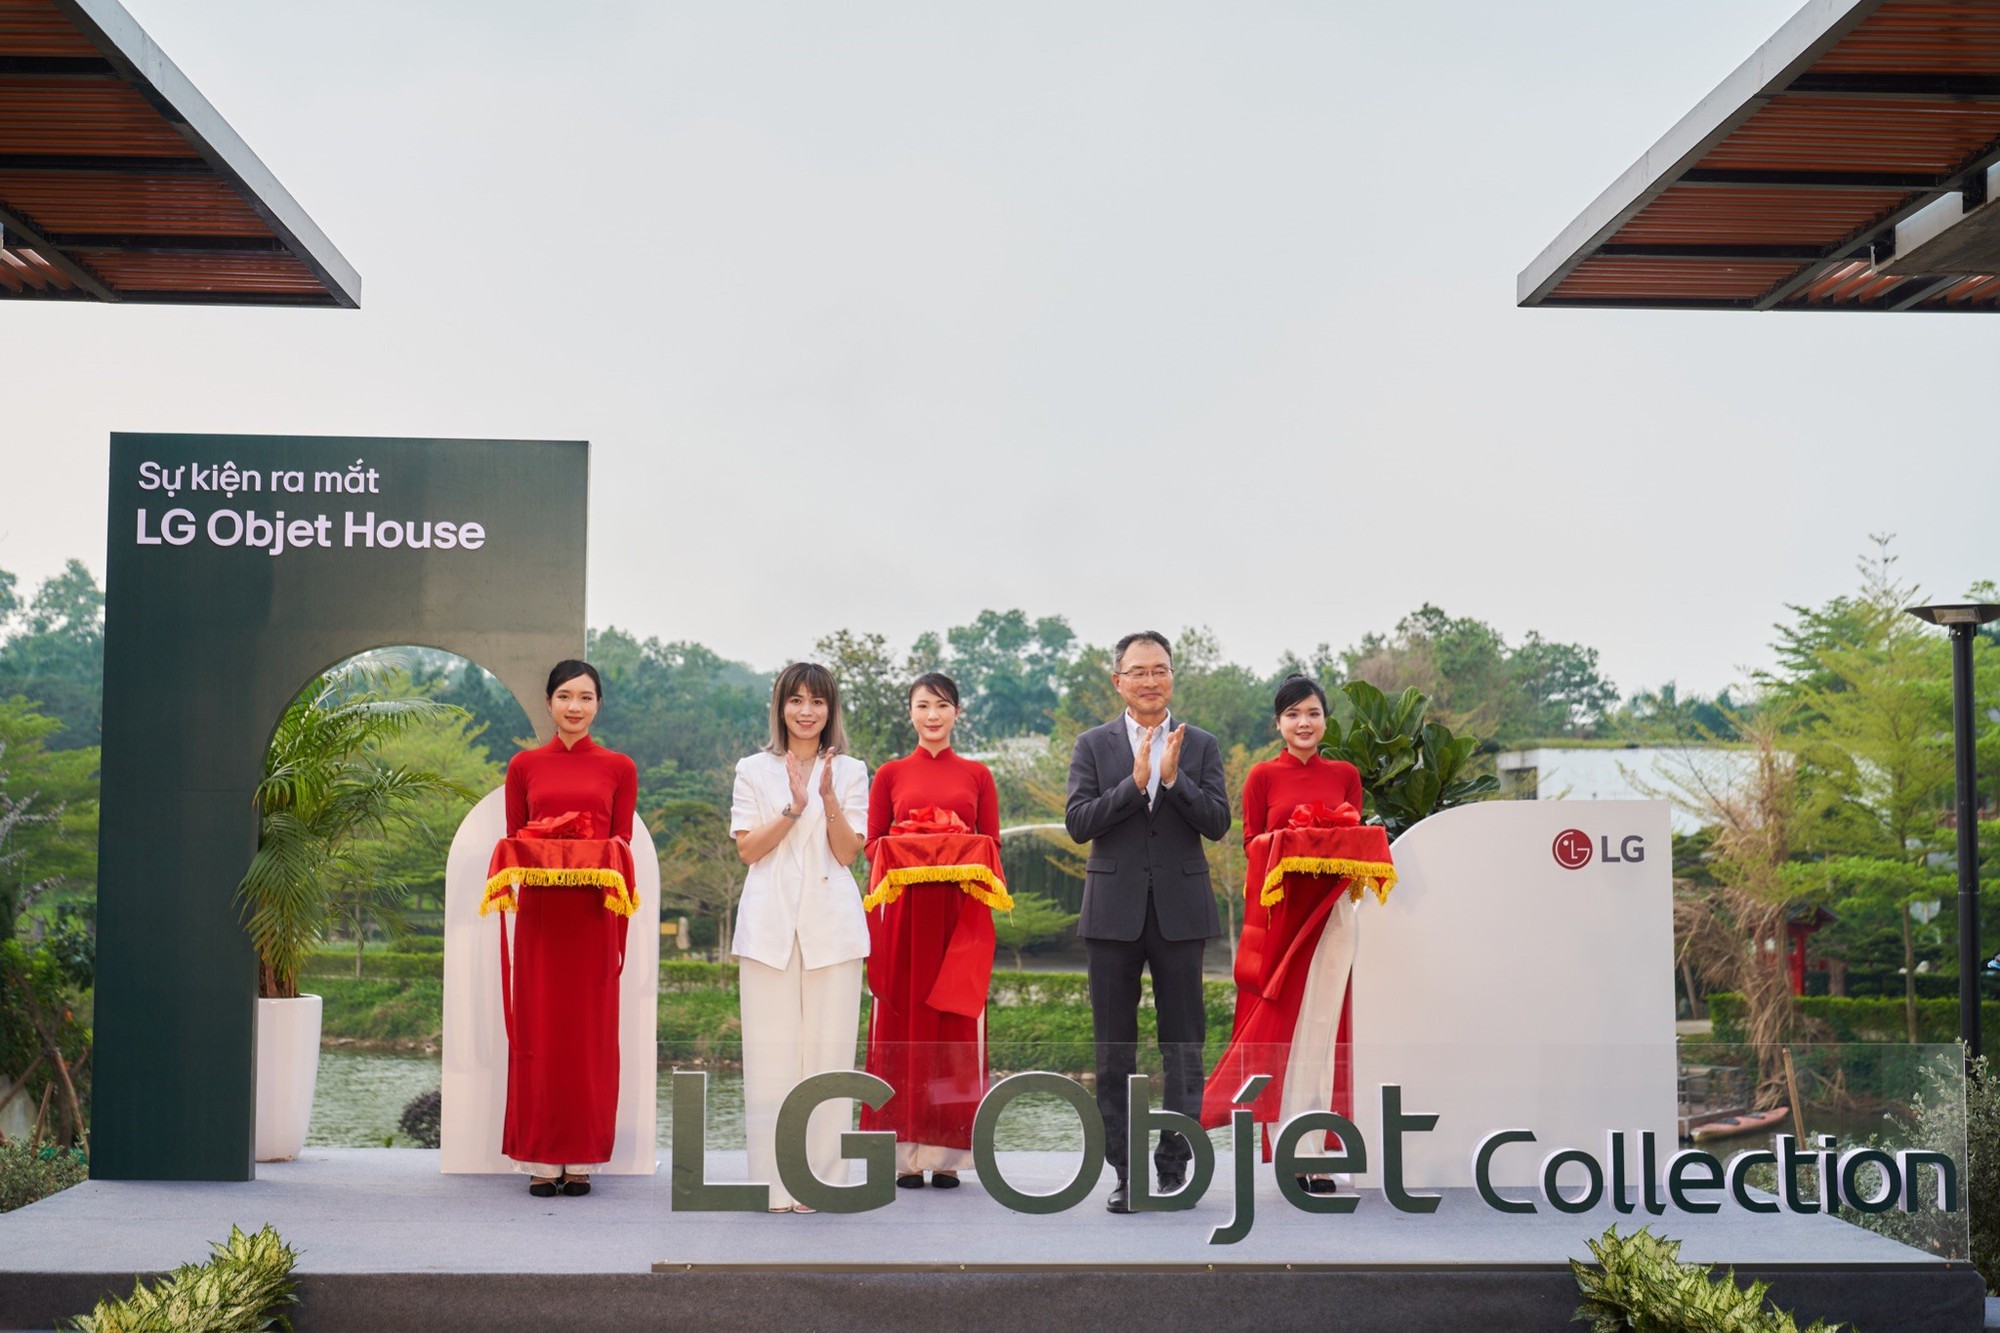 Khám phá ‘LG Objet House’ - Không gian nghỉ dưỡng kết hợp trải nghiệm sản phẩm từ LG- Ảnh 2.